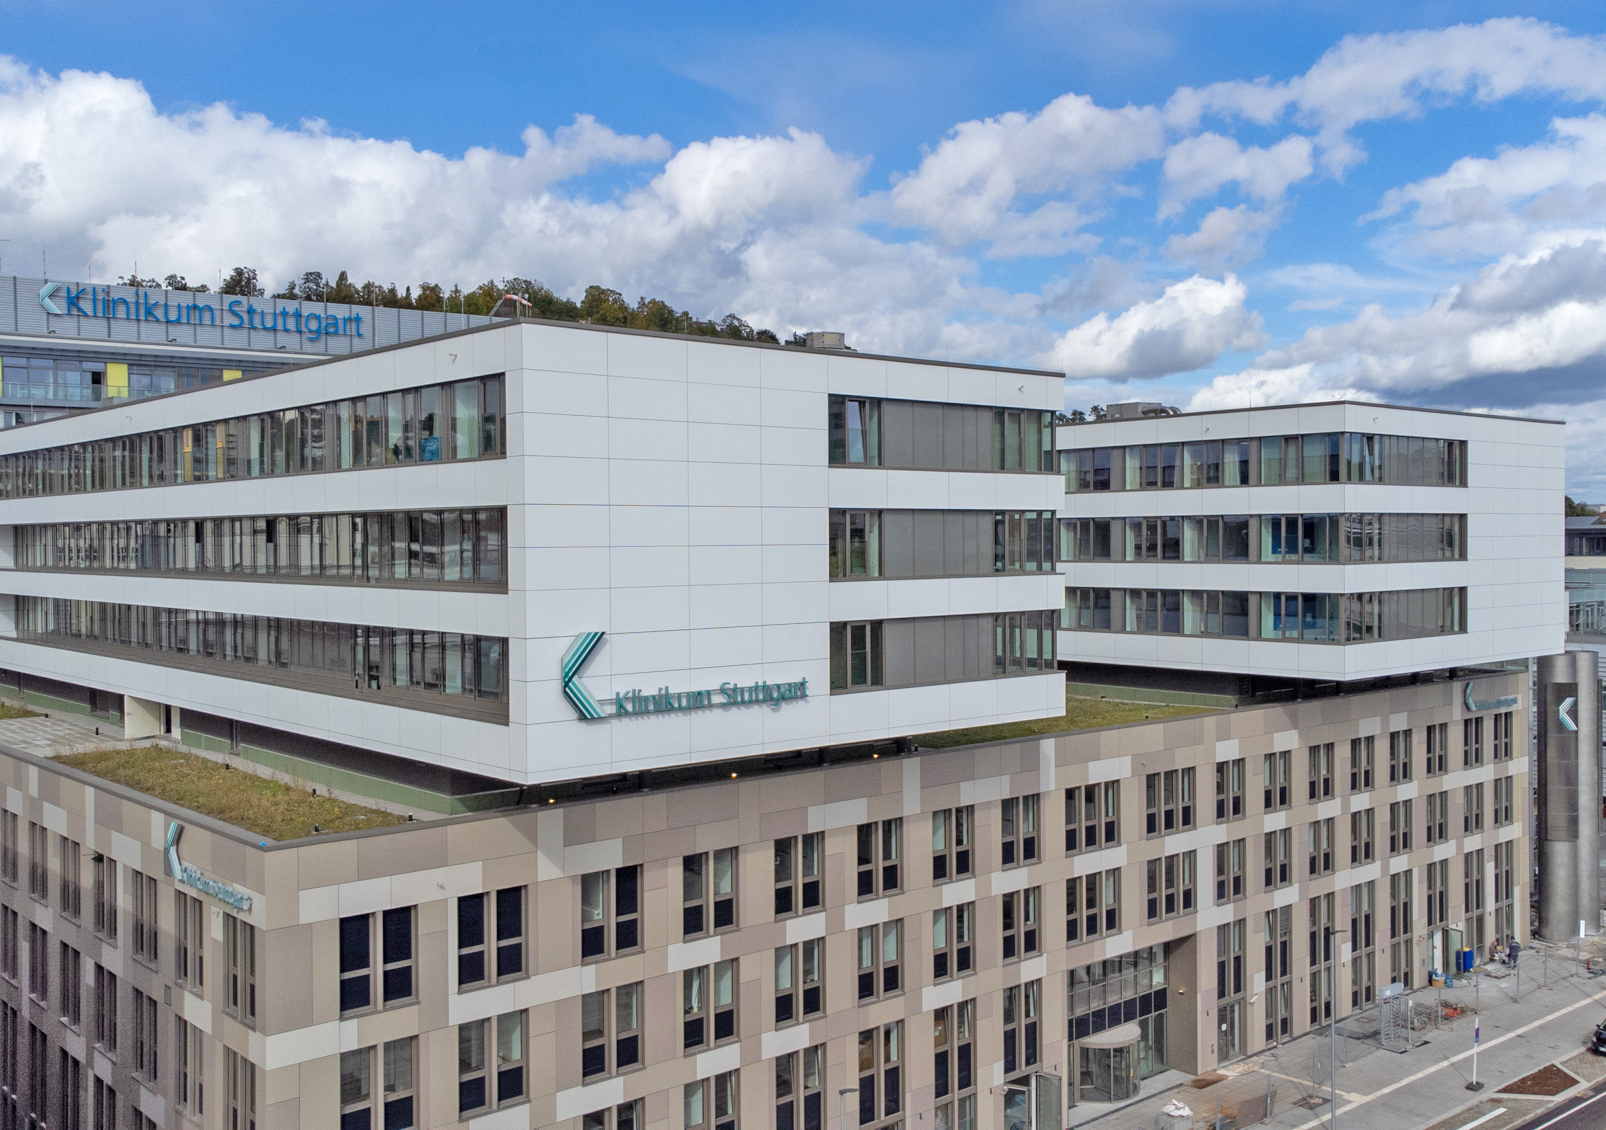 Picture of one building of Klinikum Stuttgart